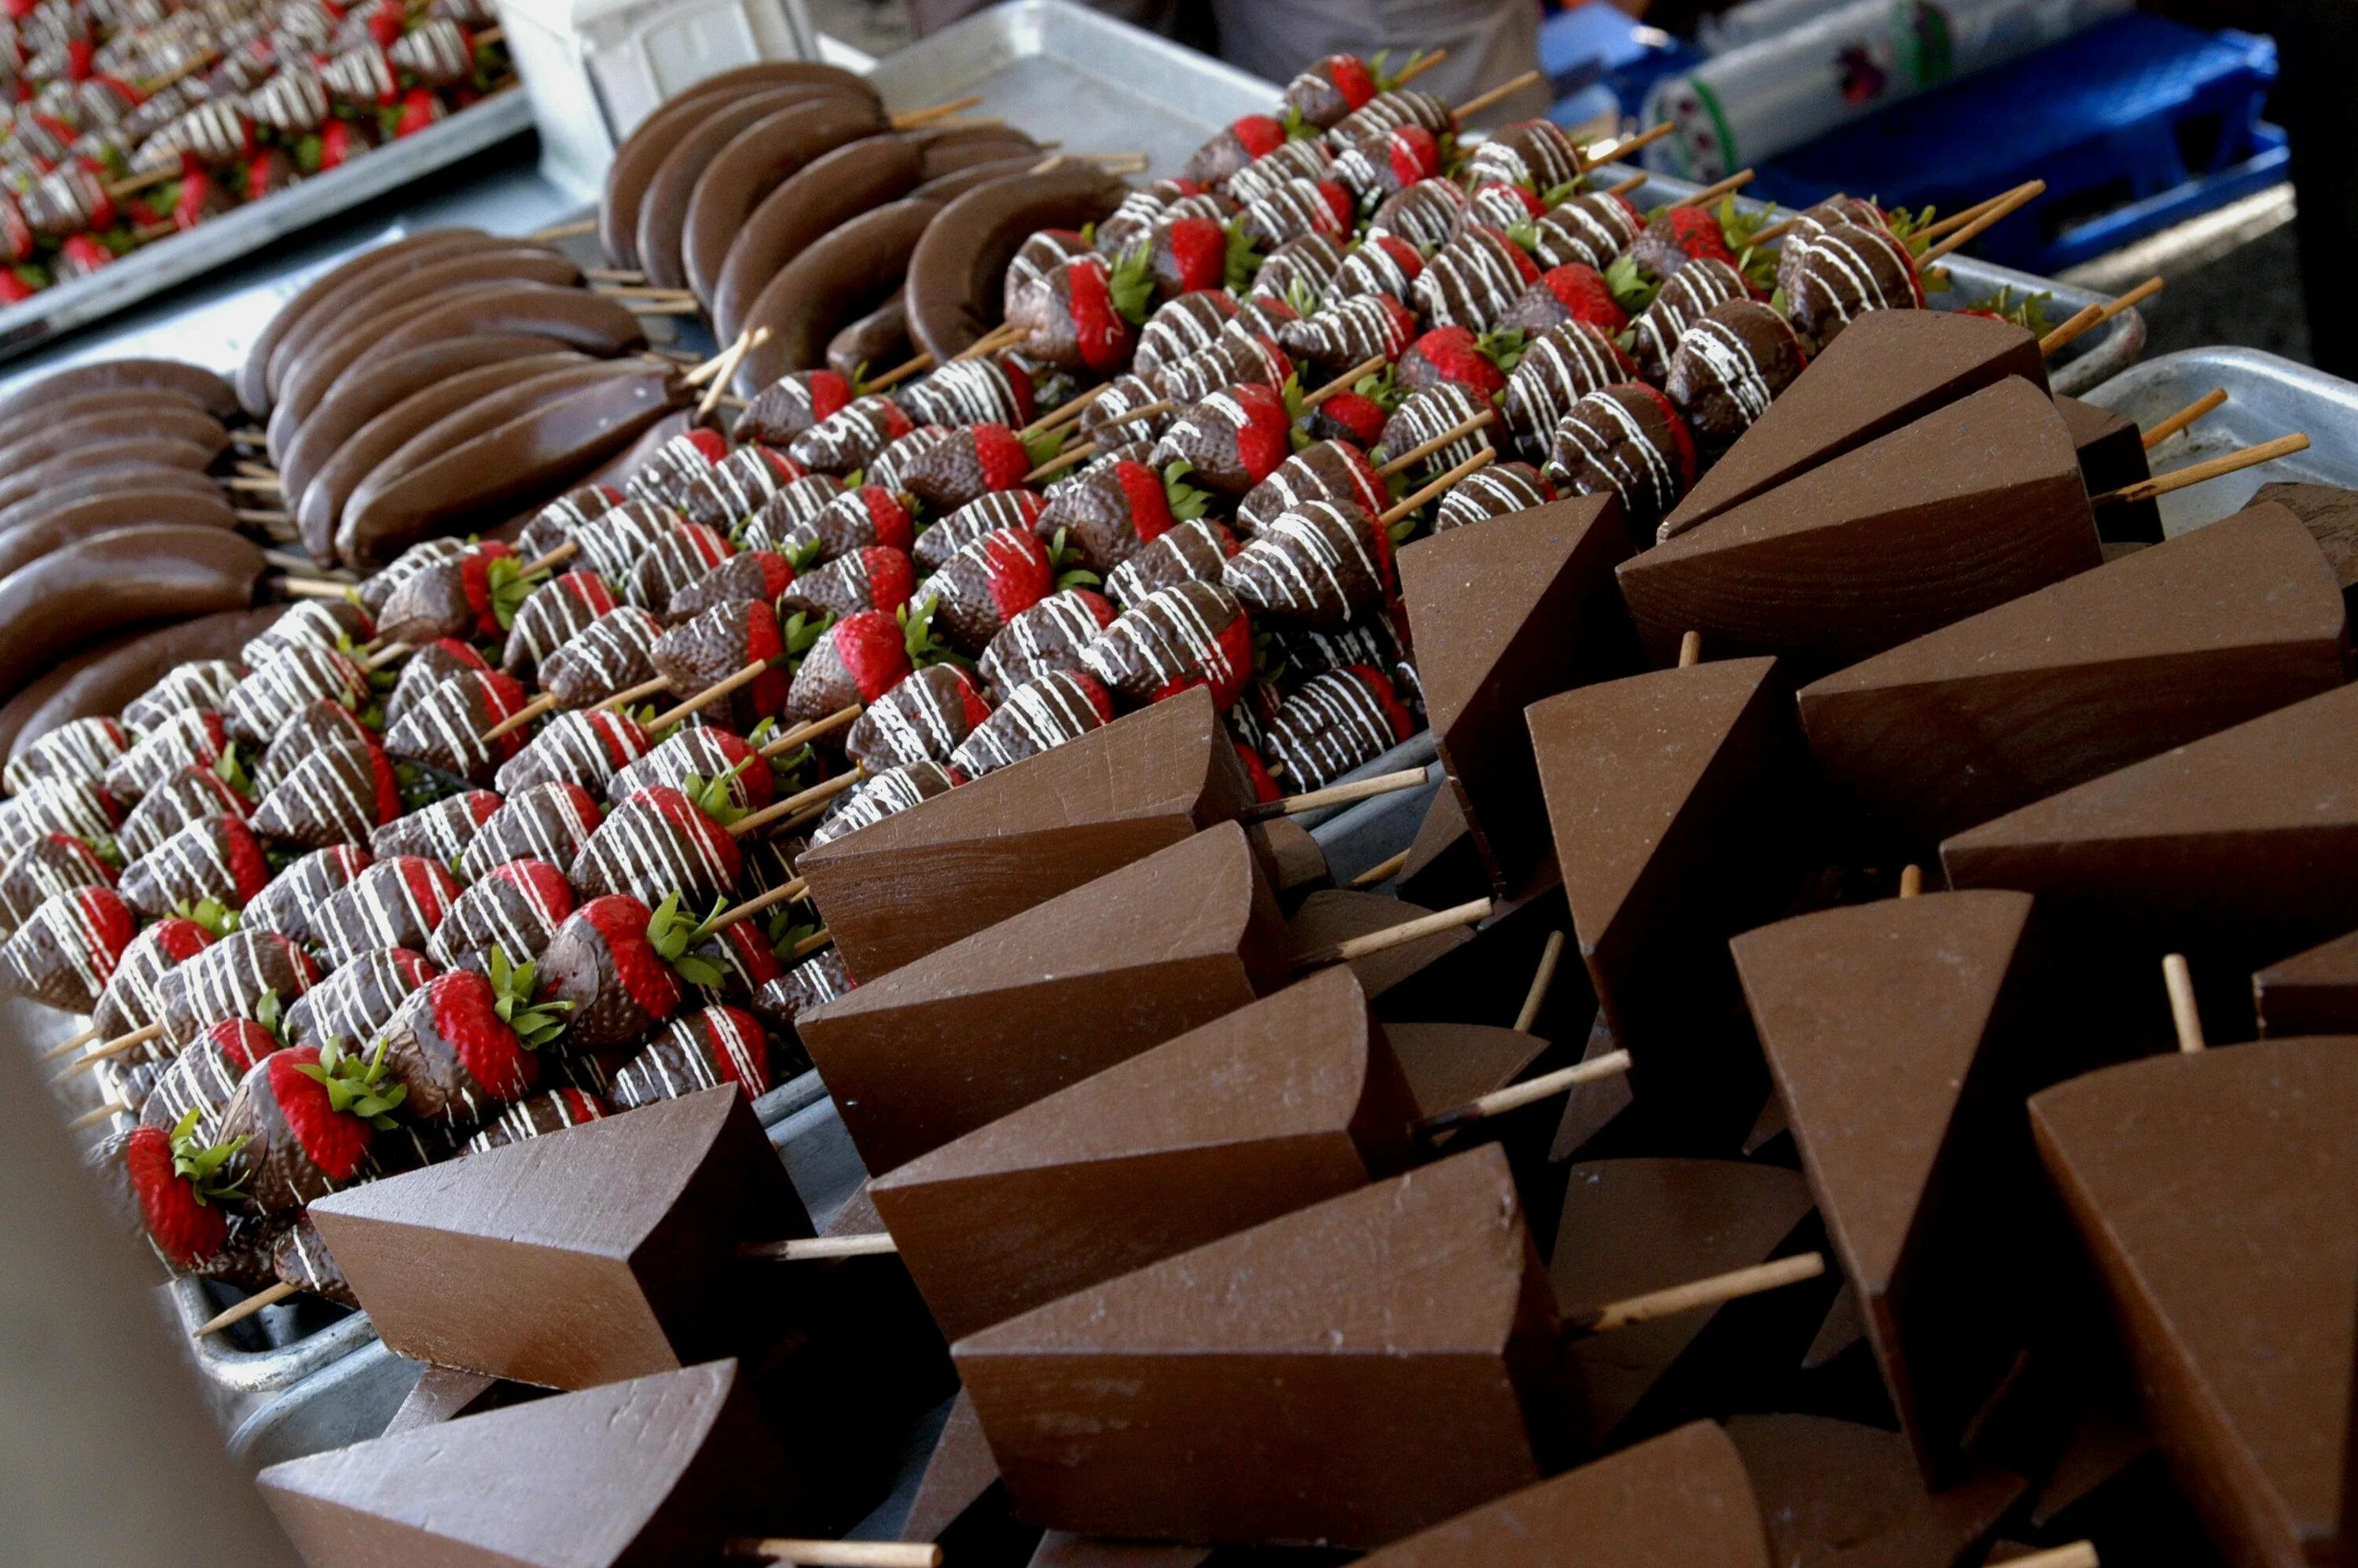 Таррагона шоколад. Шоколадка Tarragona. Шоколад Таррагона фото. Фестиваль шоколада в Италии в Перудже.